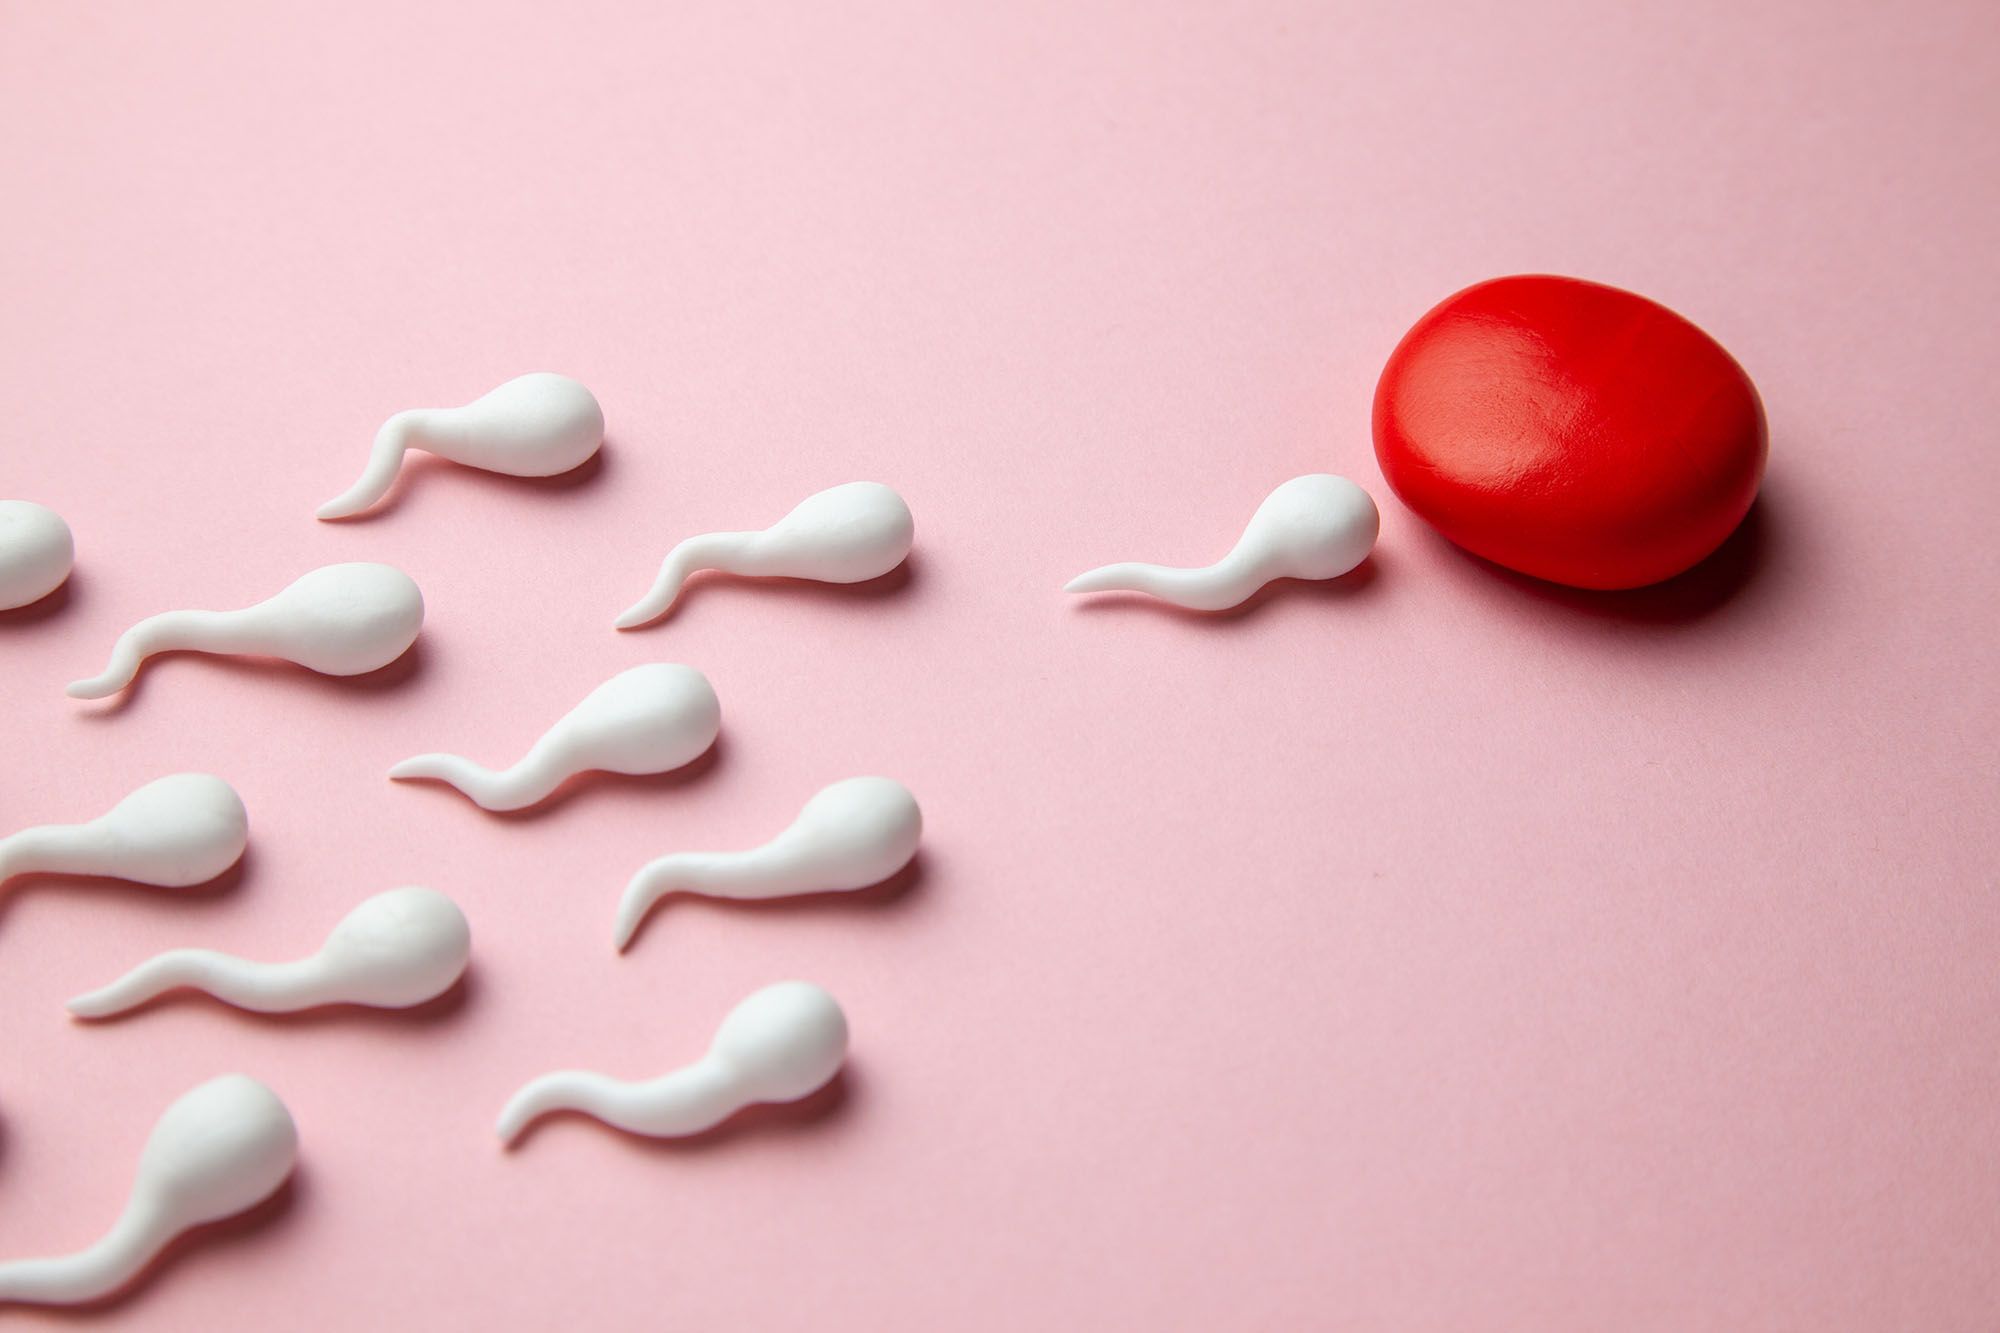 Spermien aus Gummi schwimmen auf eine rote Kugel aus Knetmasse zu